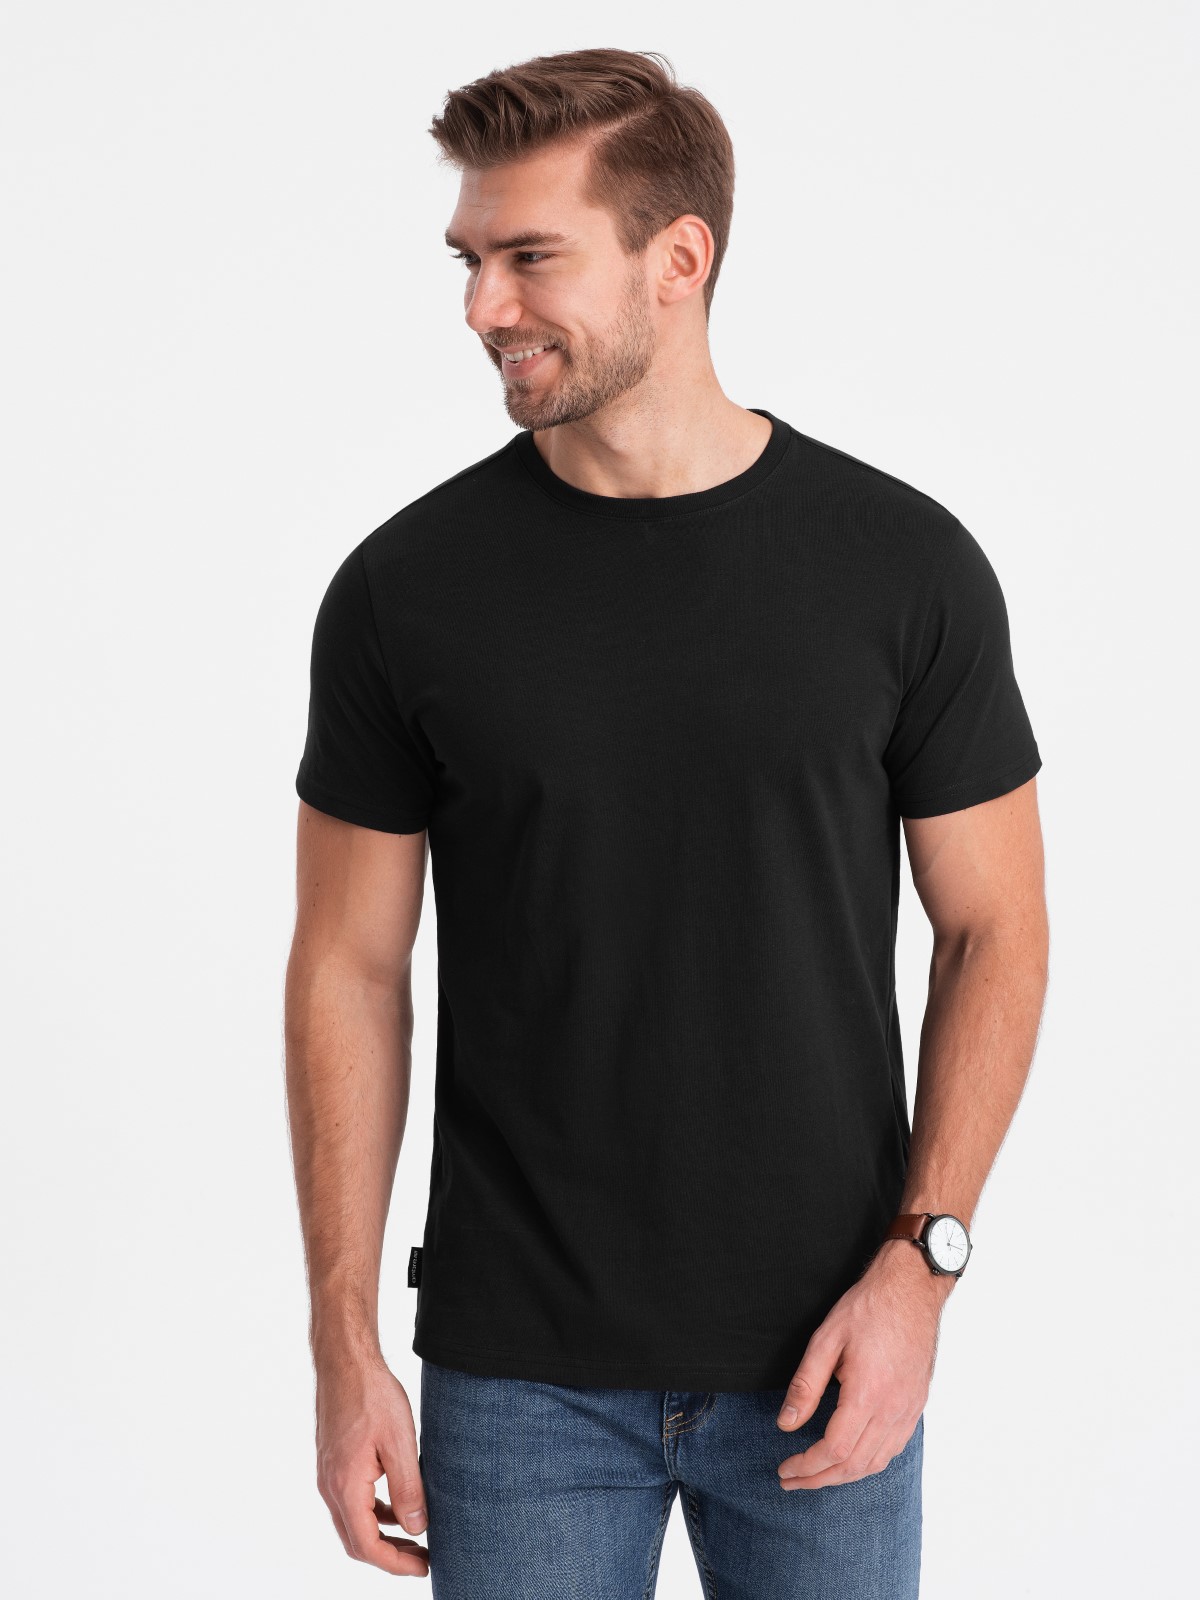 Męski klasyczny bawełniany T-shirt BASIC - ciepło-szary V7 OM-TSBS-0146